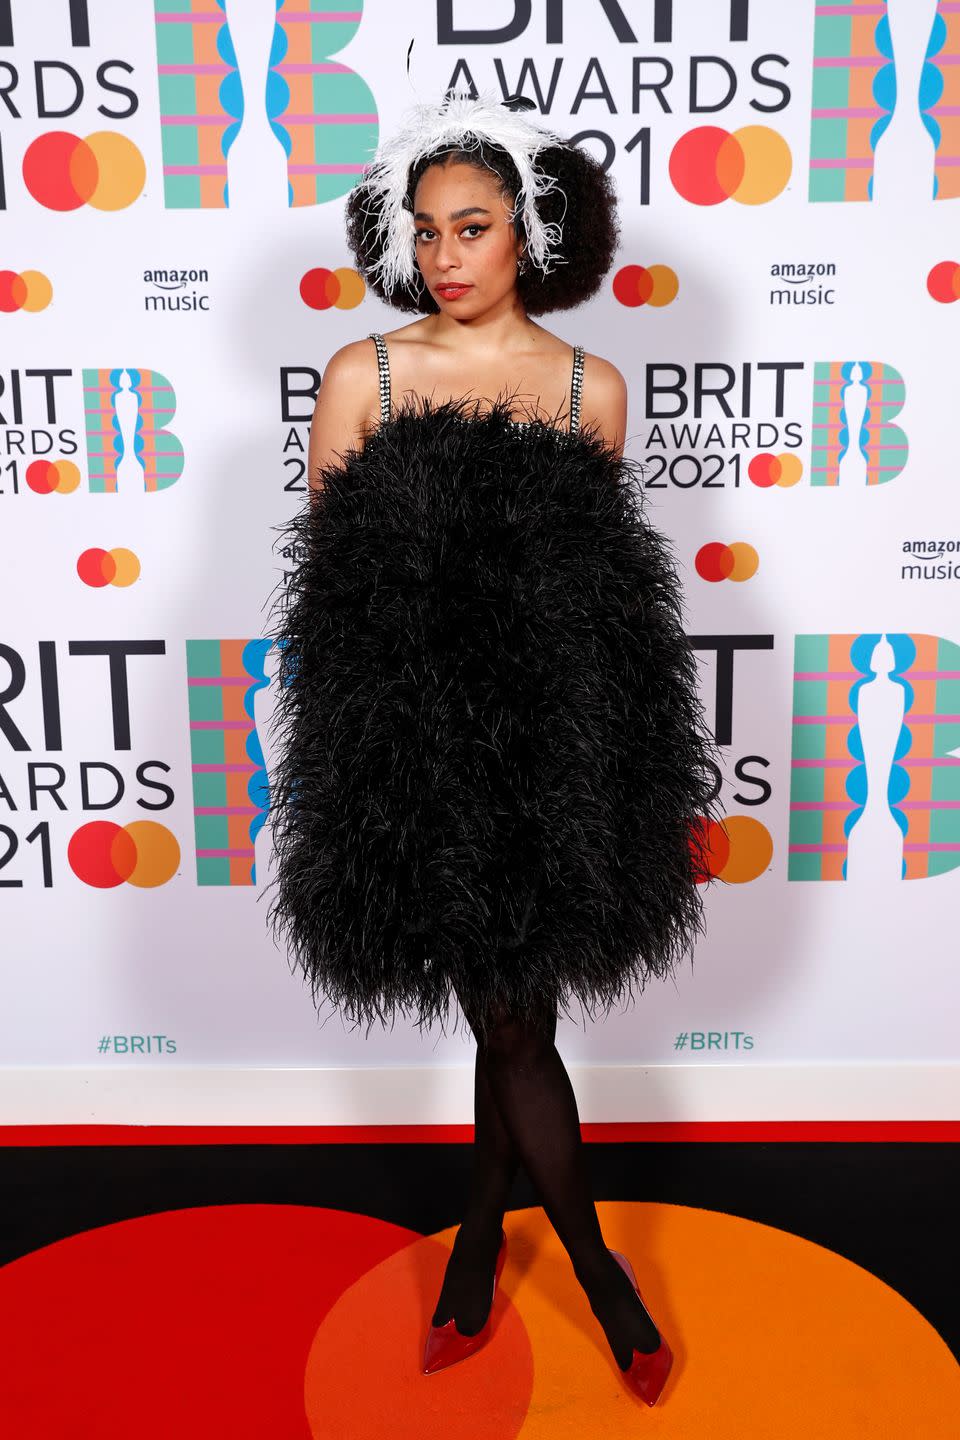 2021 BRIT Awards: Best Dressed - Celeste